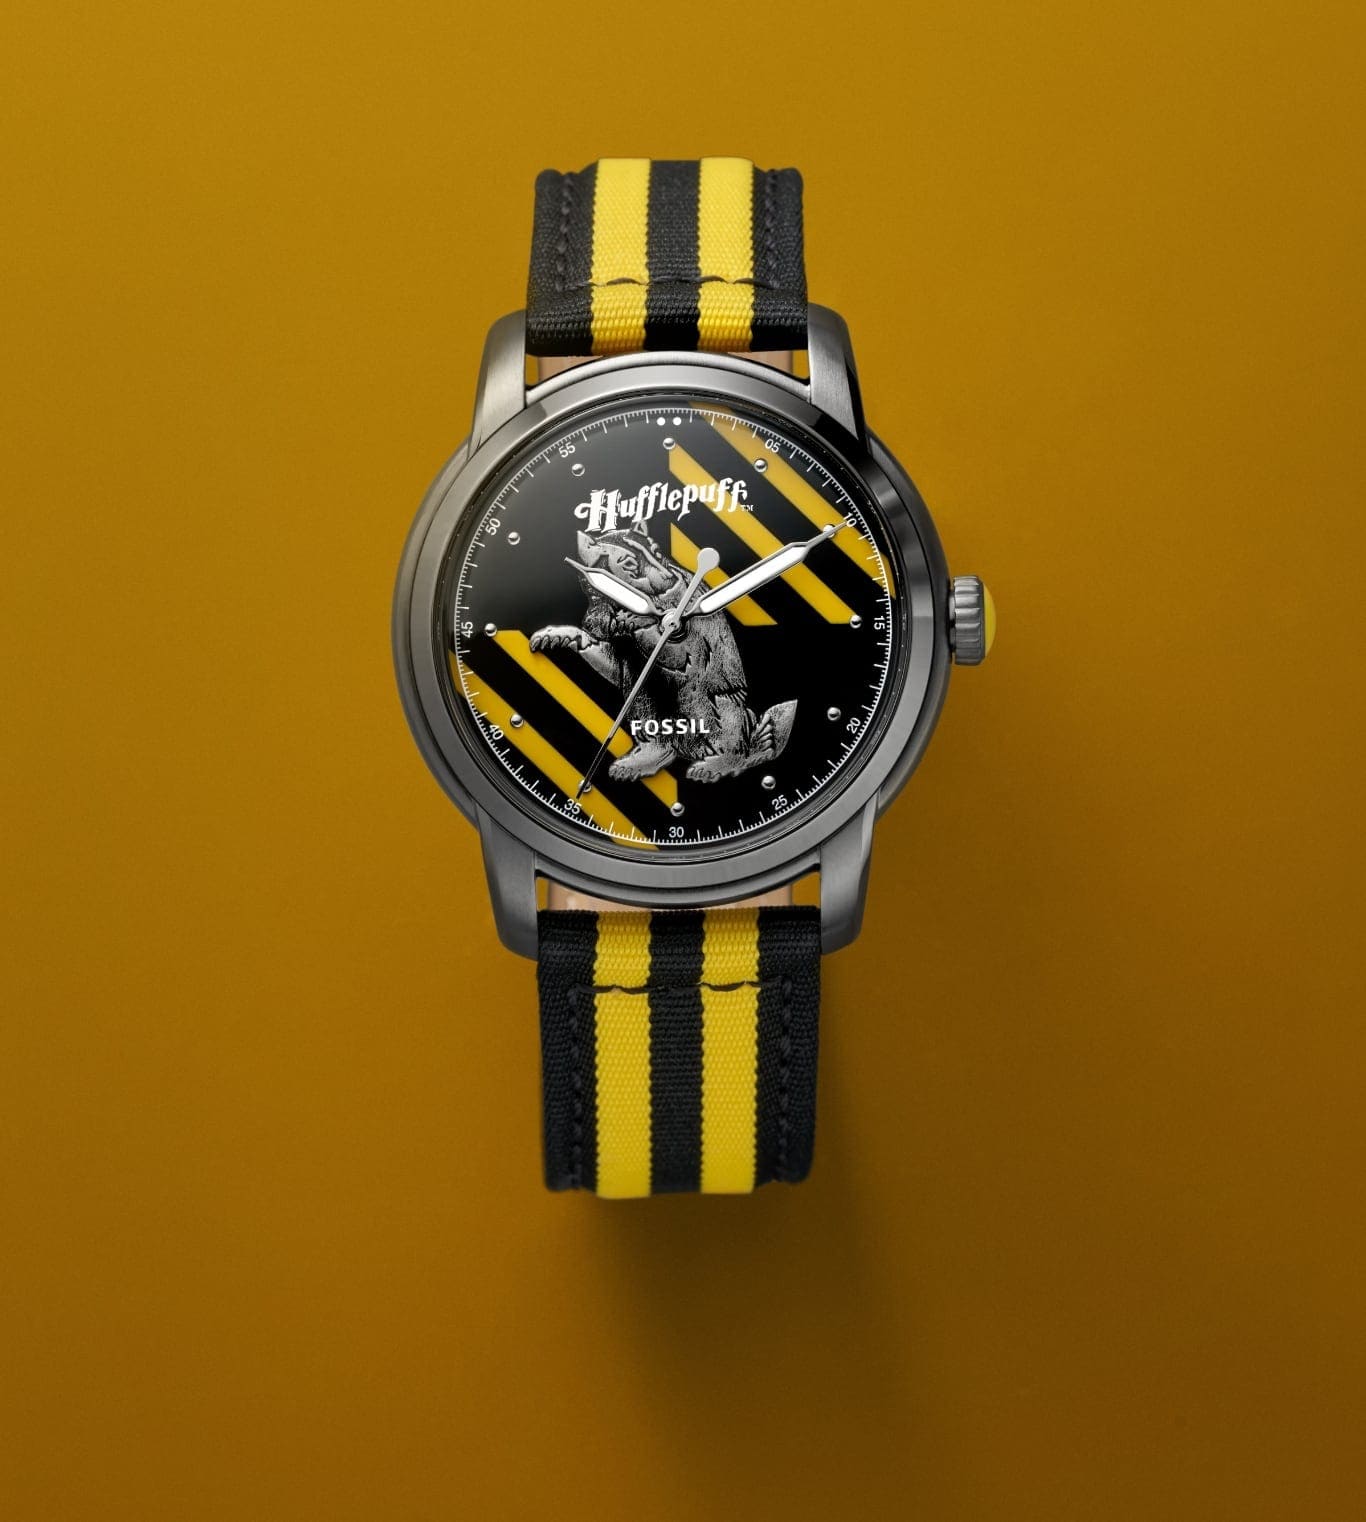 Reloj de la casa Hufflepuff en tono plateado con una correa en colores negro y amarillo.